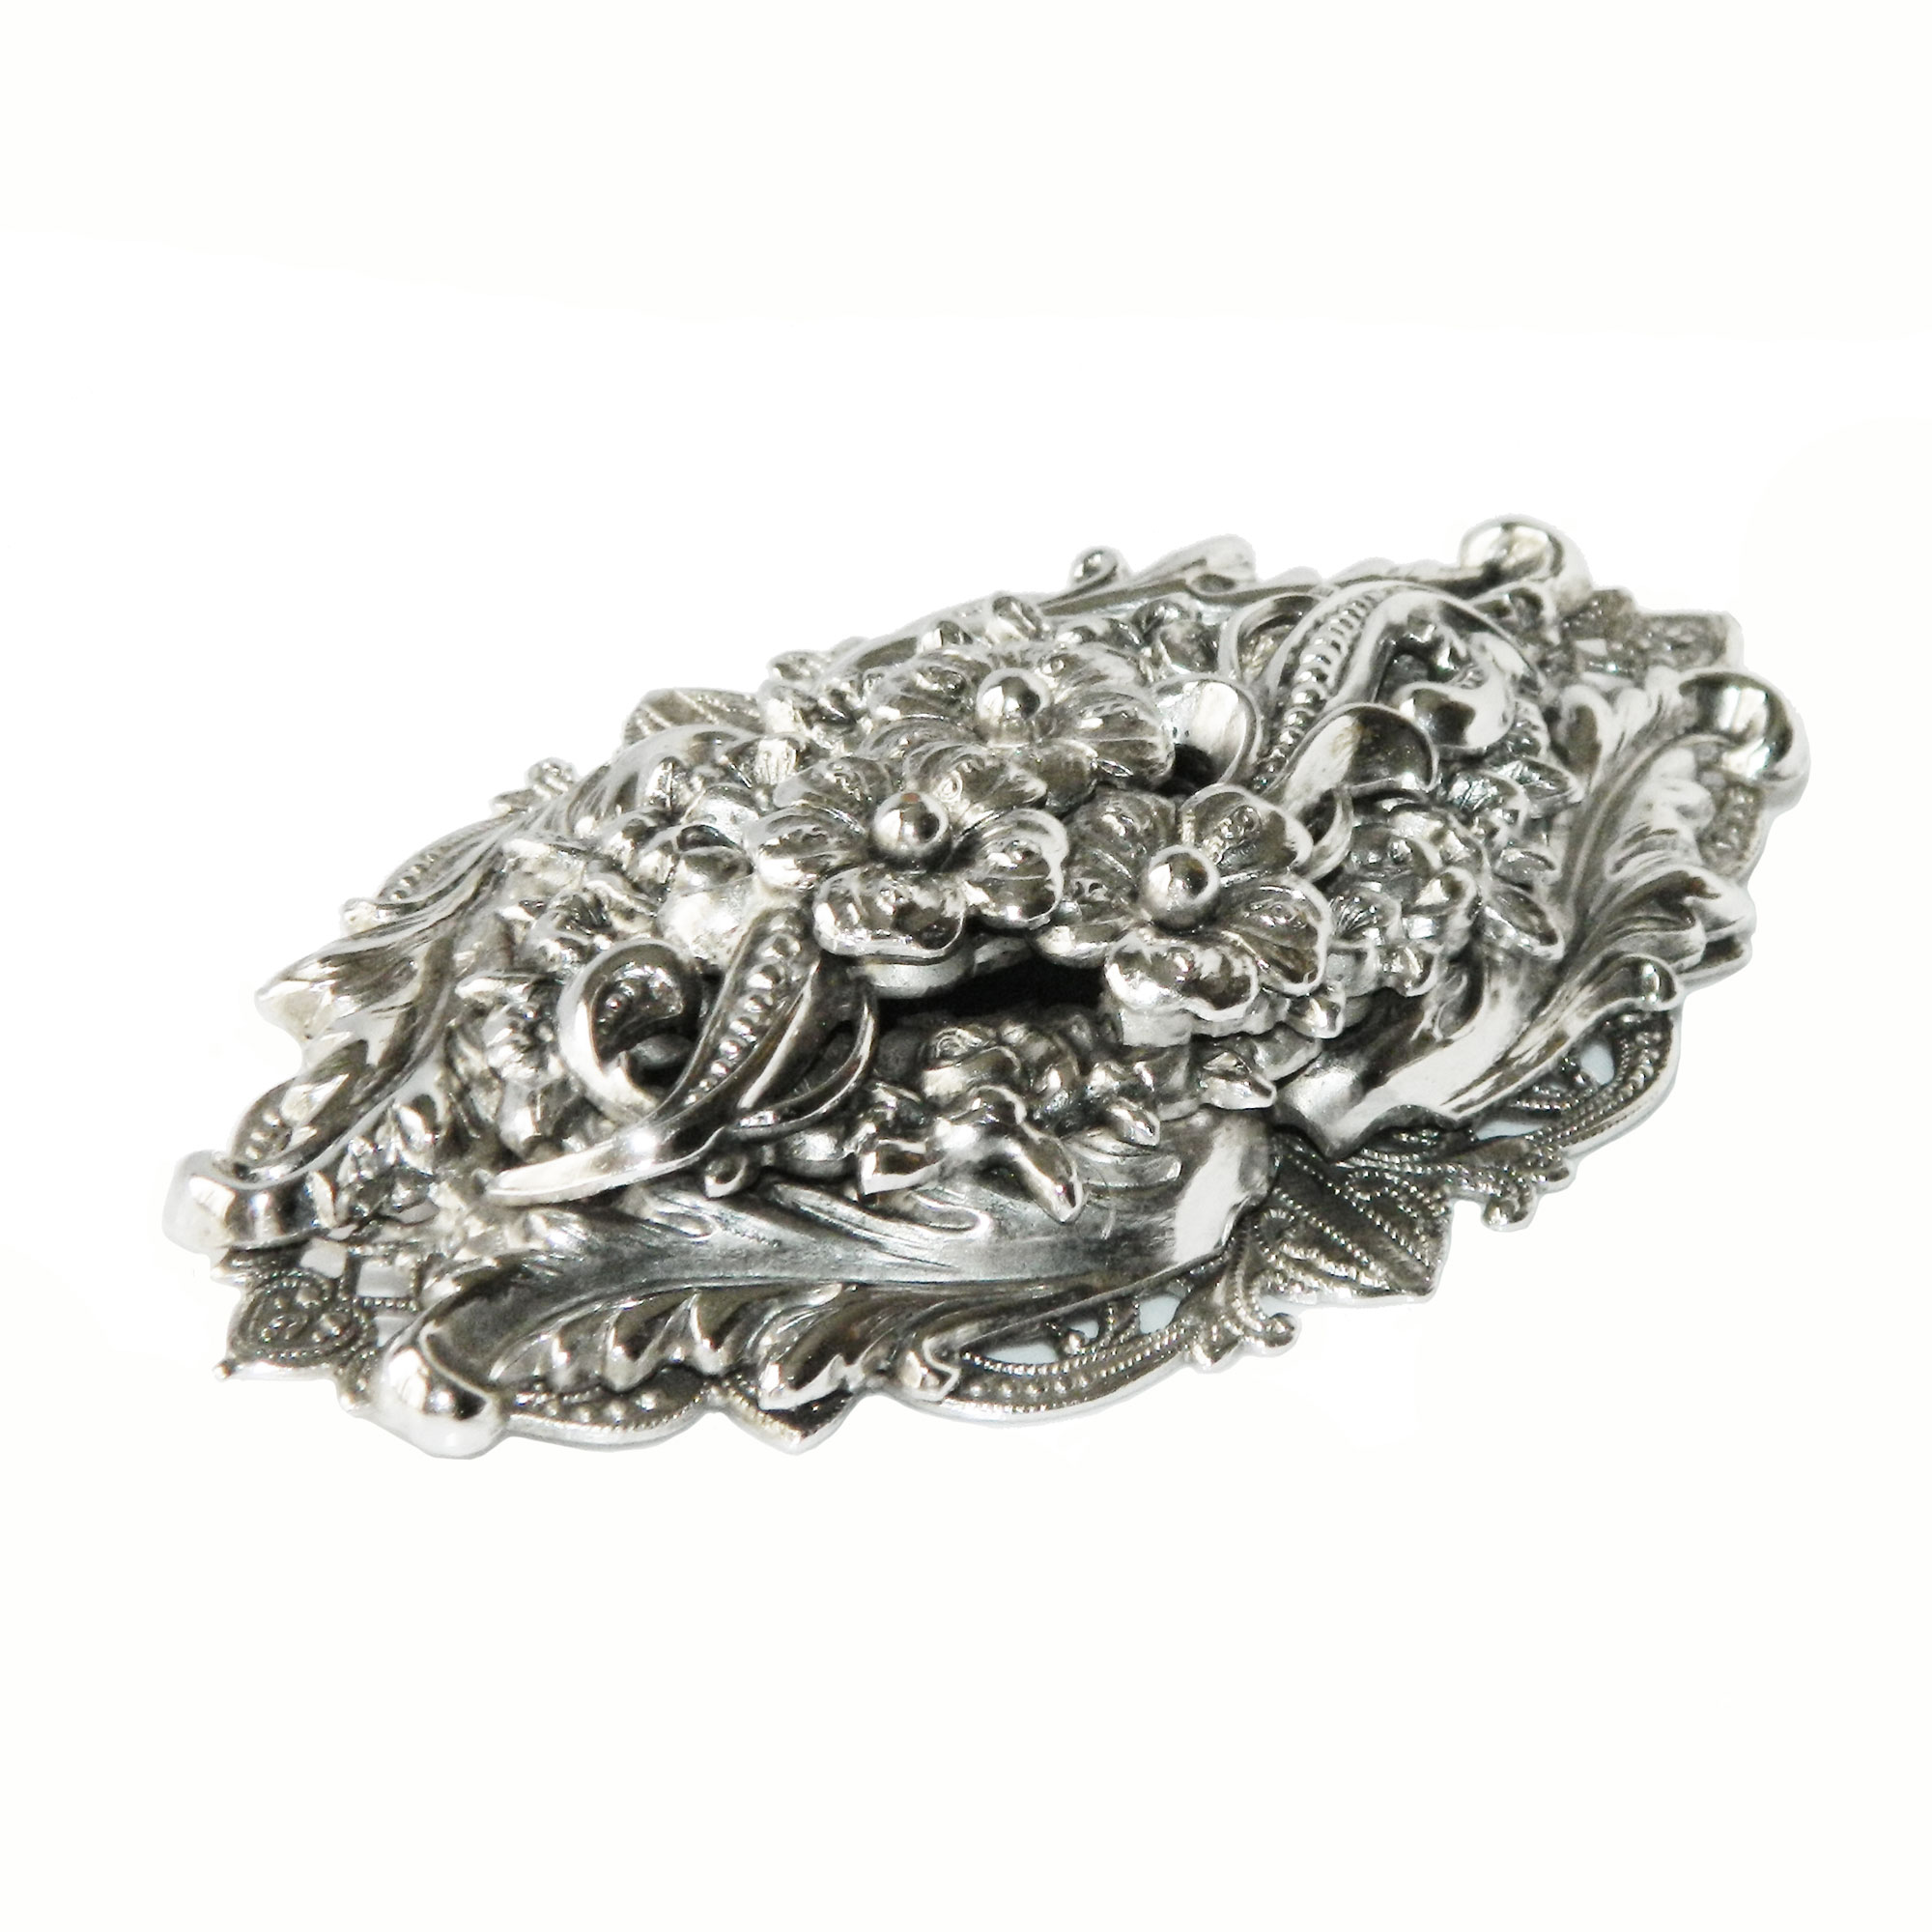 Silver metal floral brooch